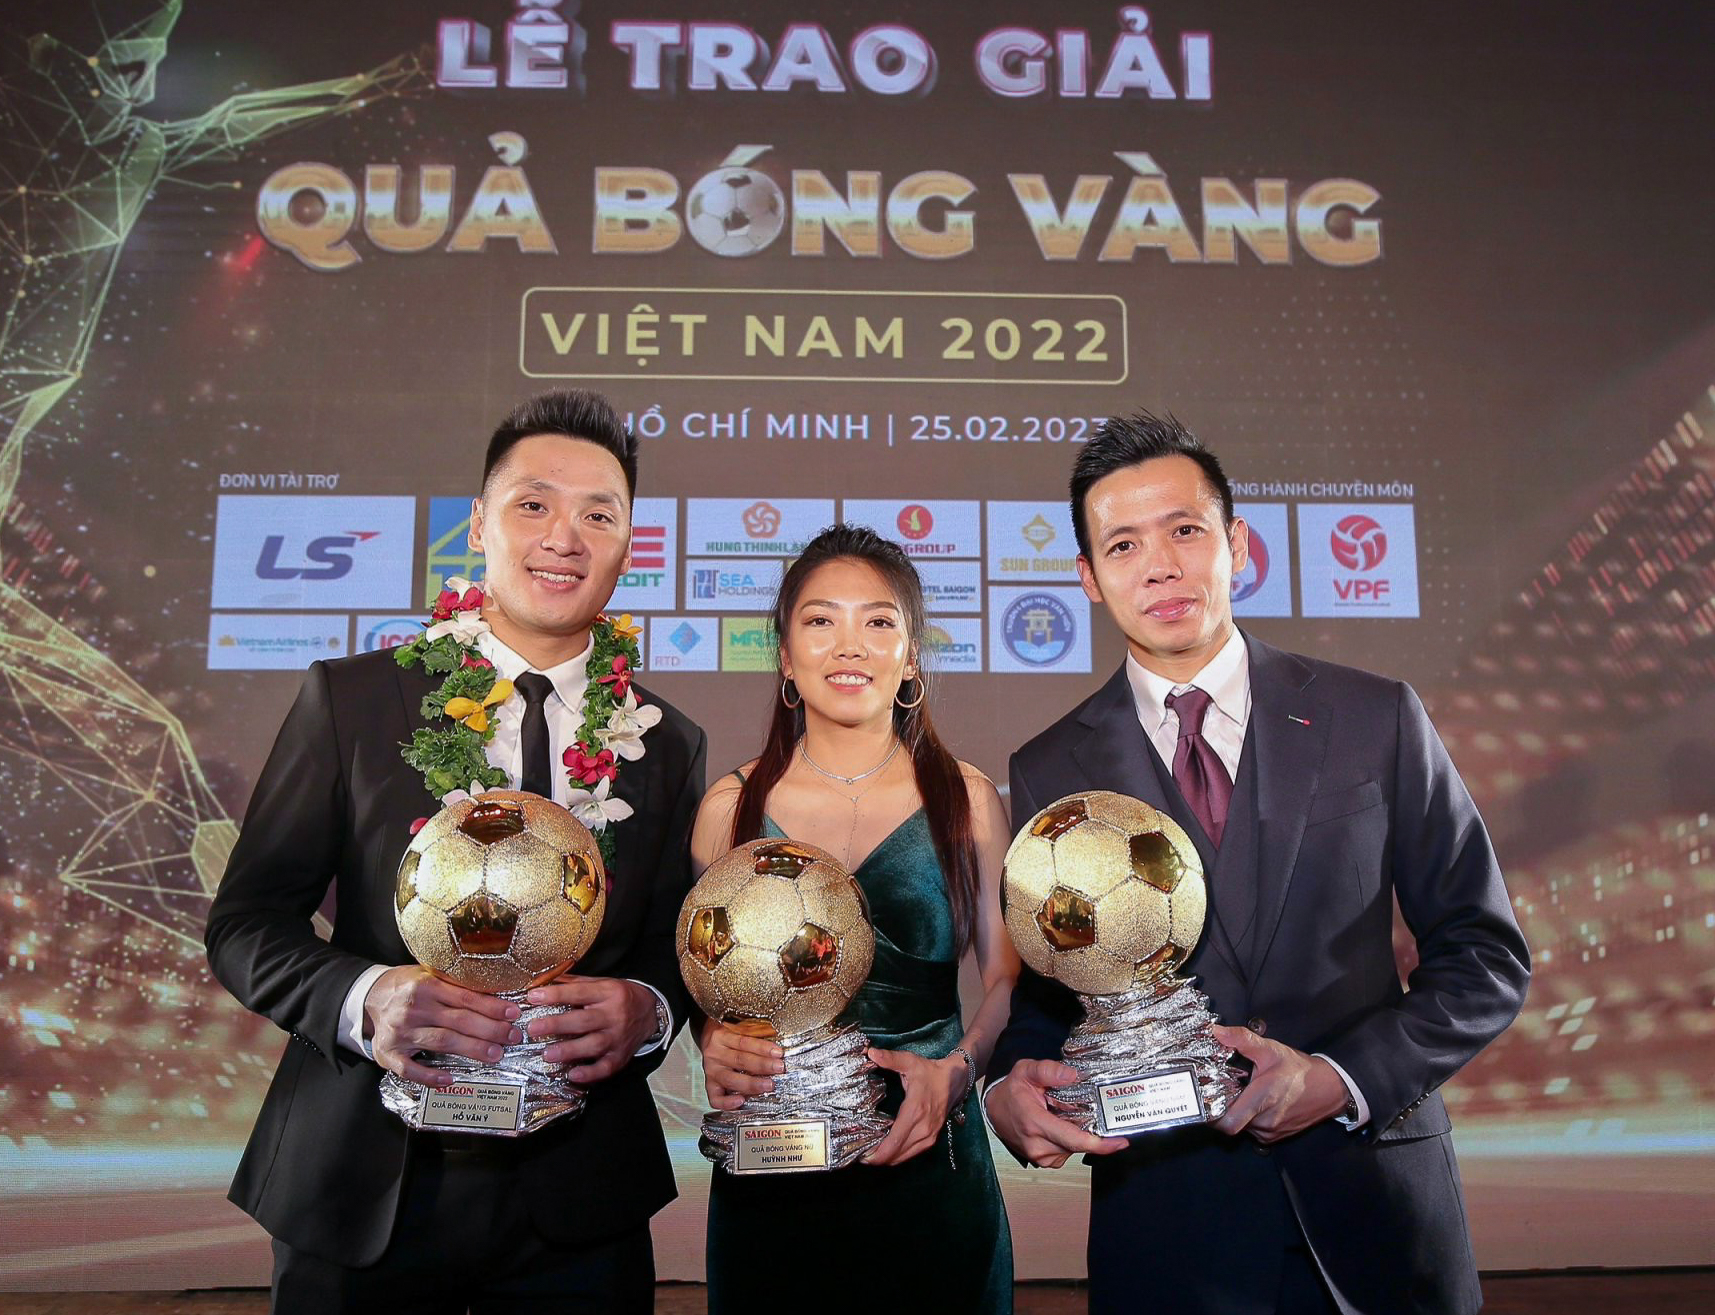 Huỳnh Như cực nhây cùng Thuỳ Trang, người hâm mộ vây kín dàn cầu thủ Quả bóng vàng Việt Nam 2022 - Ảnh 2.